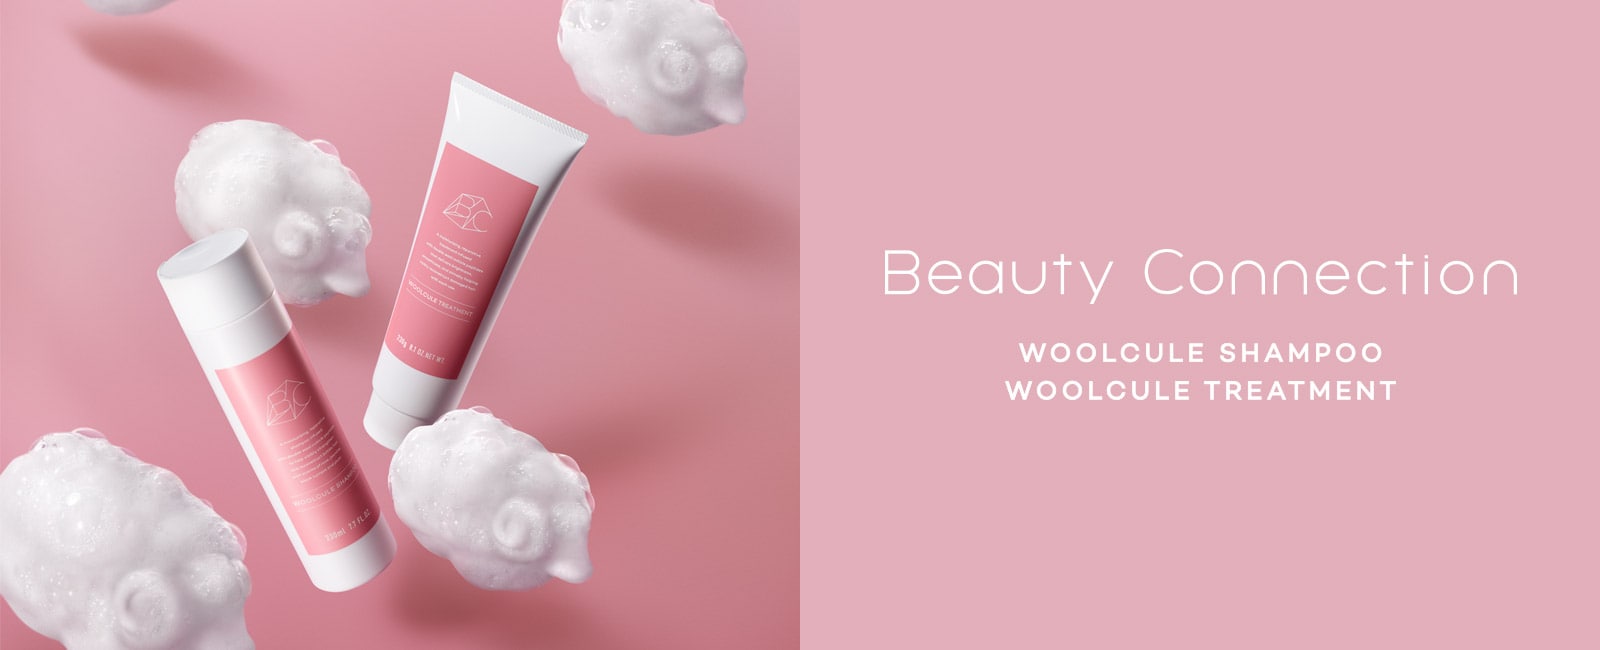 Beauty Connection WOOLCULE SHAMPOO WOOLCULE TREATMENT